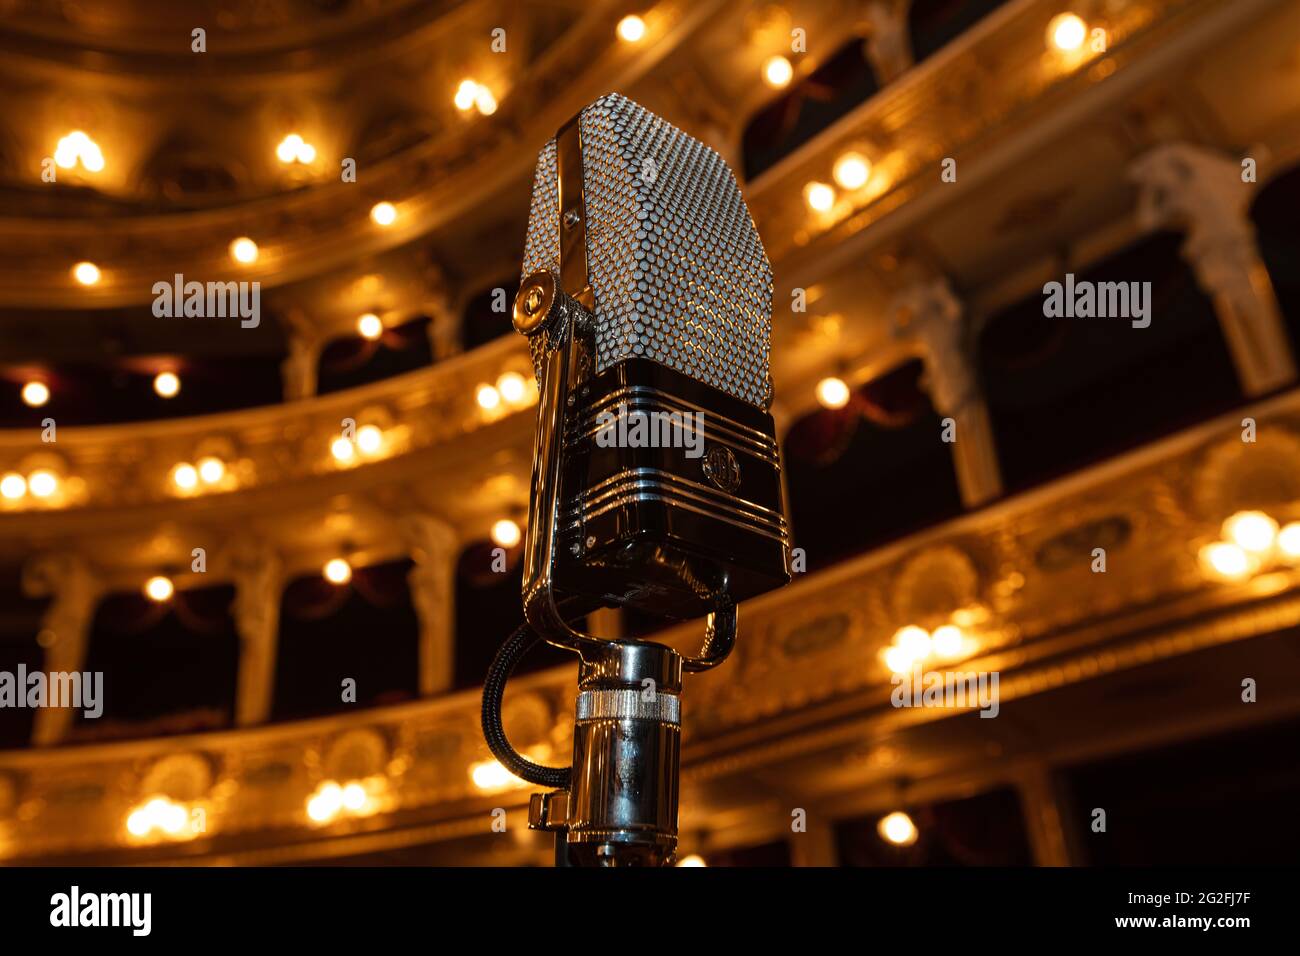 Lviv, Ukraine - 10 juin 2021 : AEA Ribbon microphone R44C sur fond intérieur d'opéra Lviv Banque D'Images